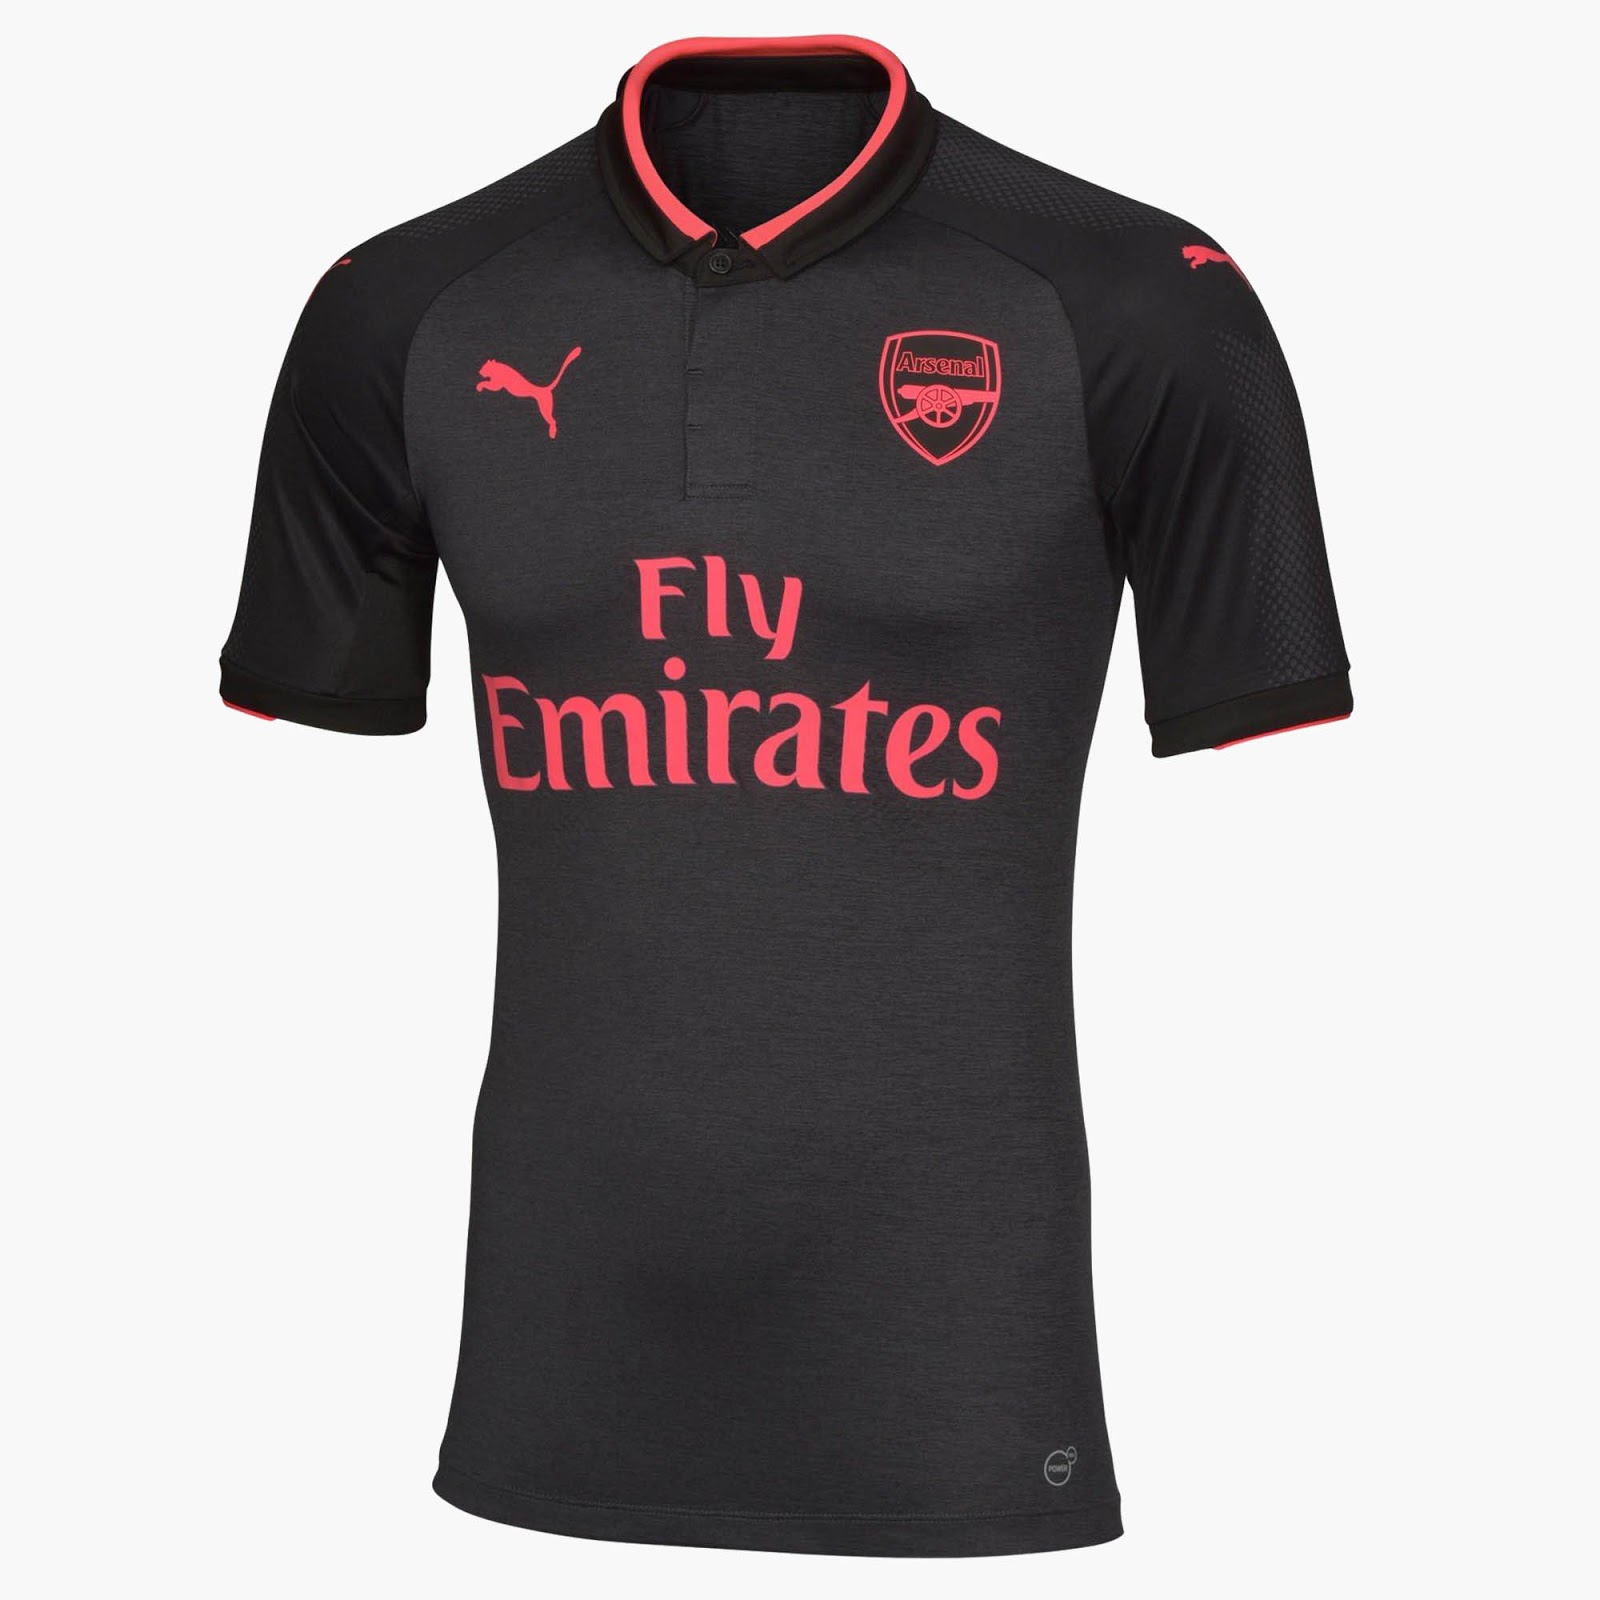 Le maillot d'Arsenal third 2017/2018 est gris avec de vives accentuations roses.